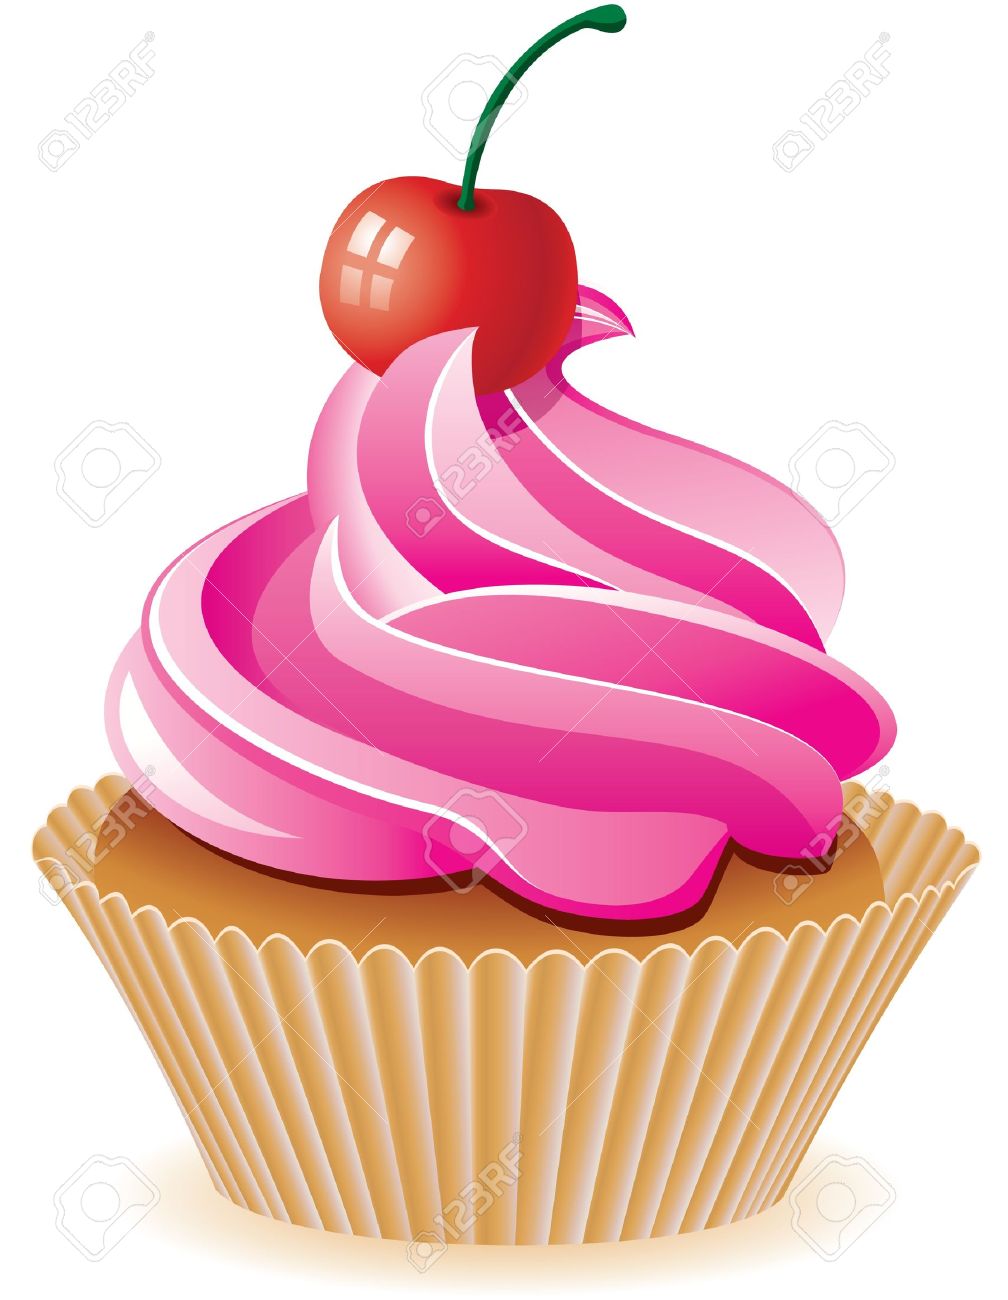 cherry clipart birthday cupcake